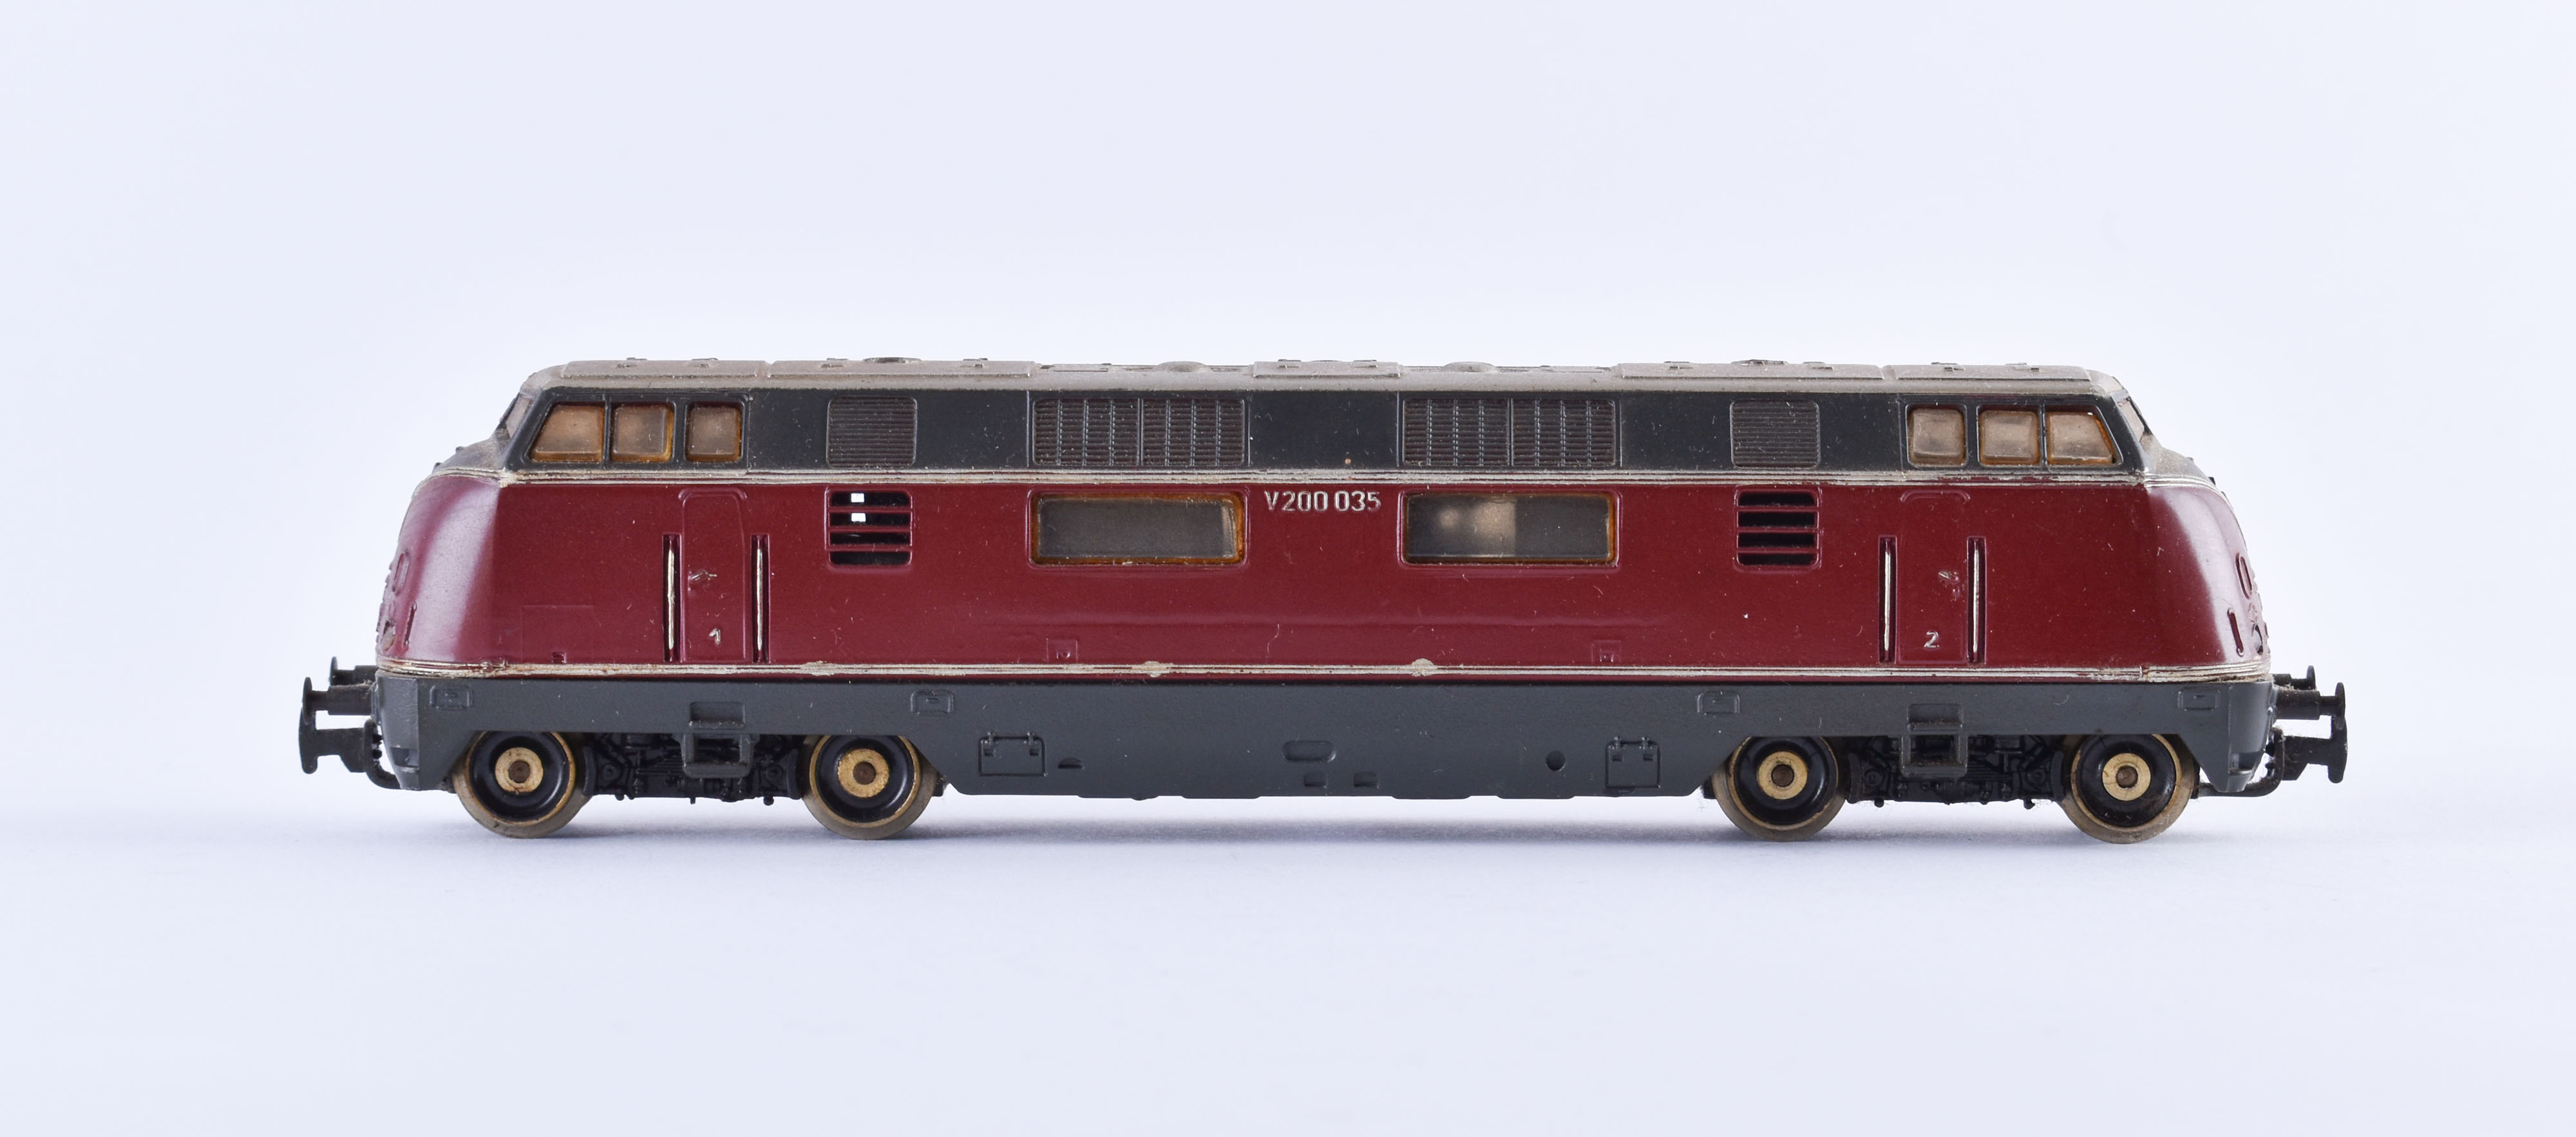 Diesel locomotive V 200035 - Fleischmann